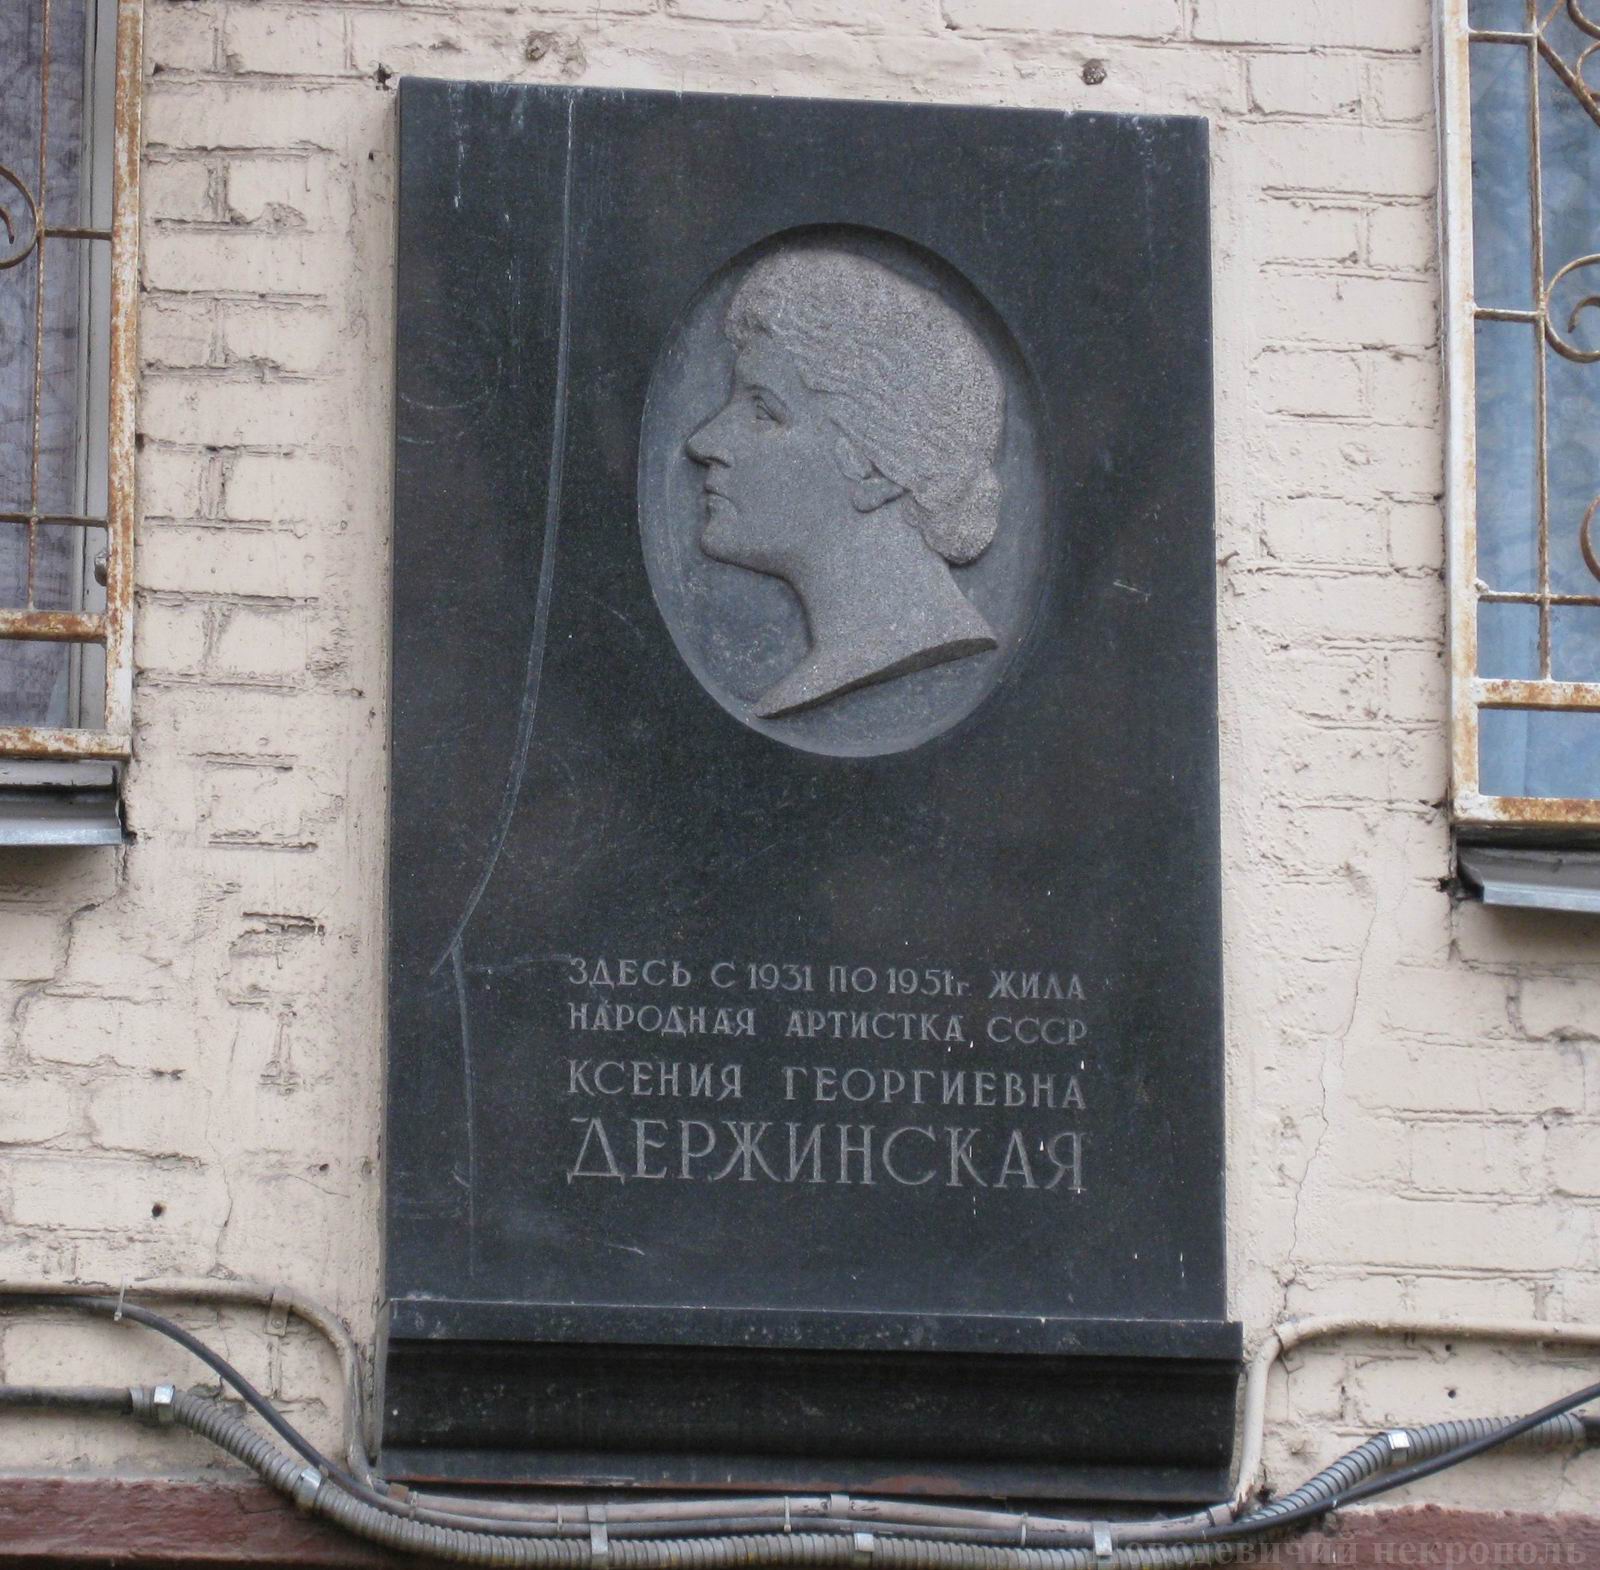 Мемориальная доска Держинской К.Г. (1889–1951), арх. К.А.Держинский, в Старопименовском переулке, дом 16, открыта в 1968.